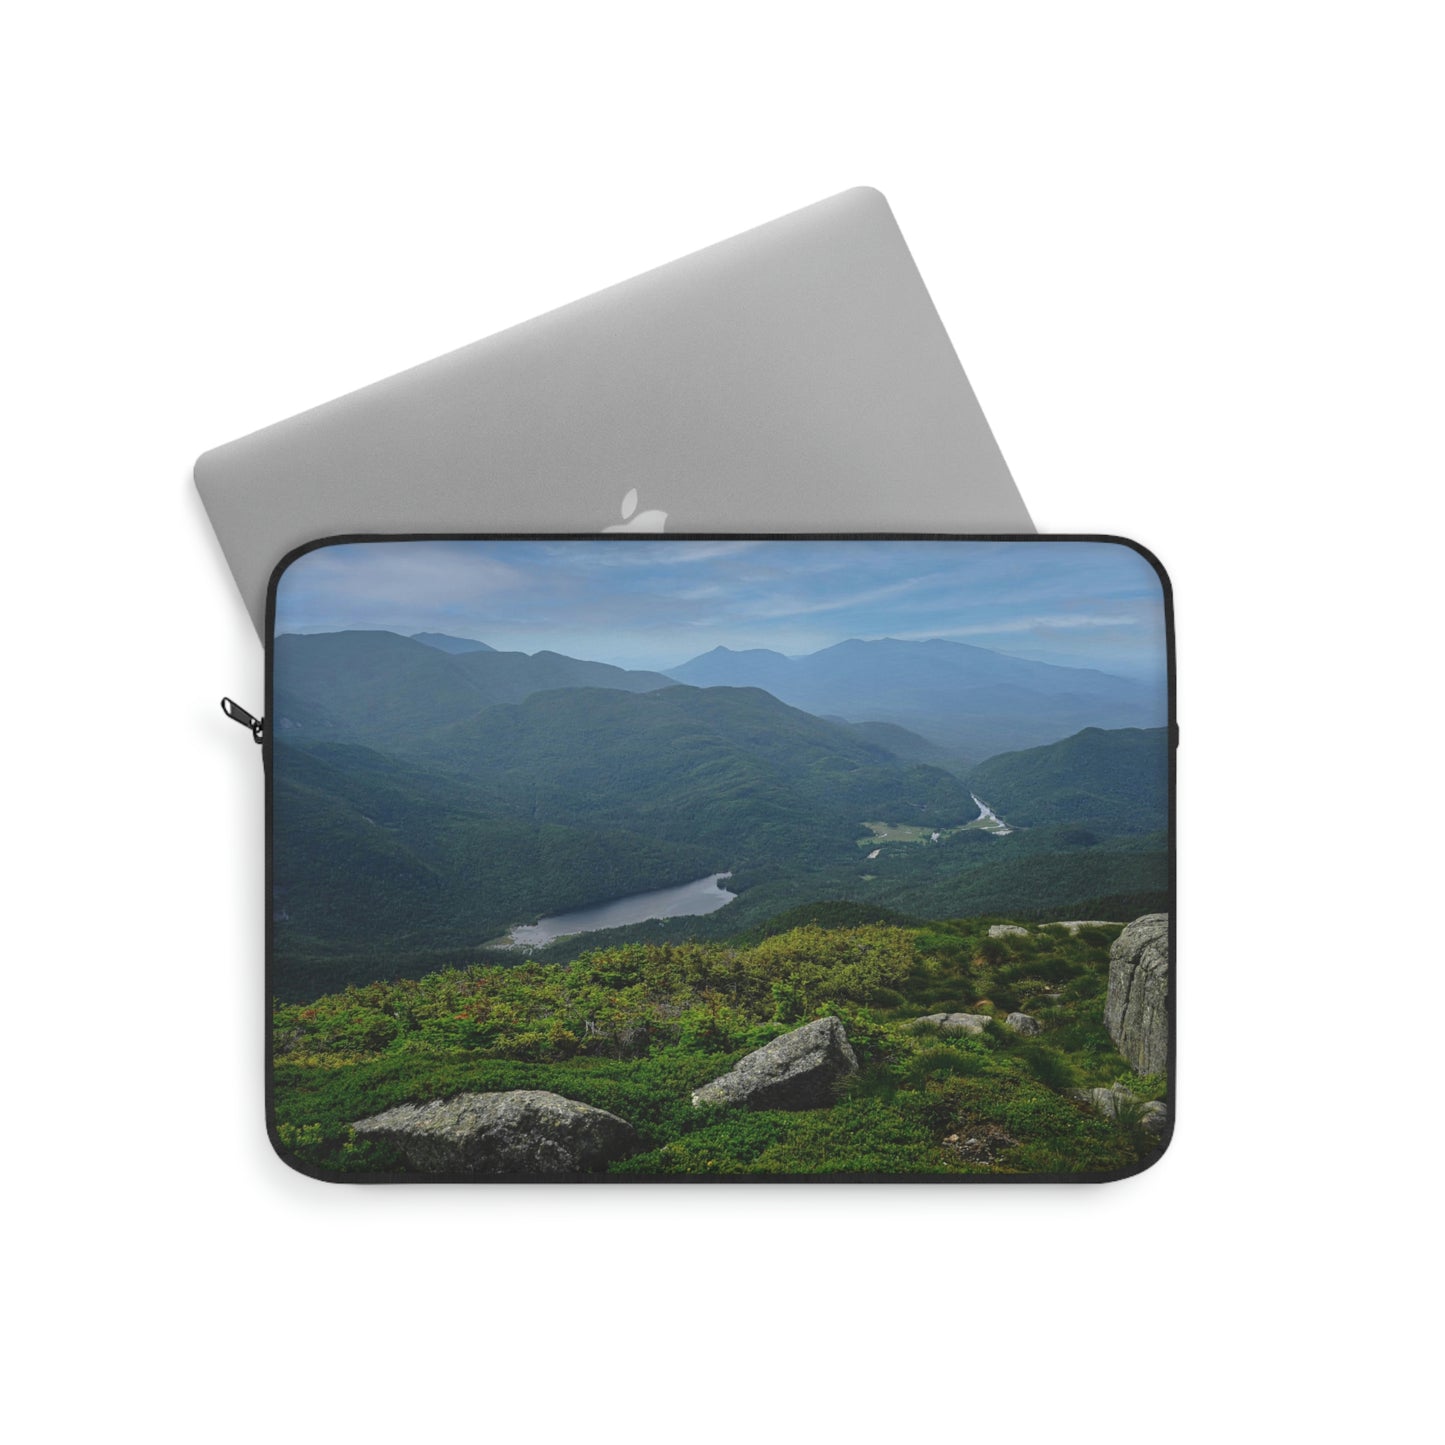 Laptop Sleeve - MacIntyre Range Views